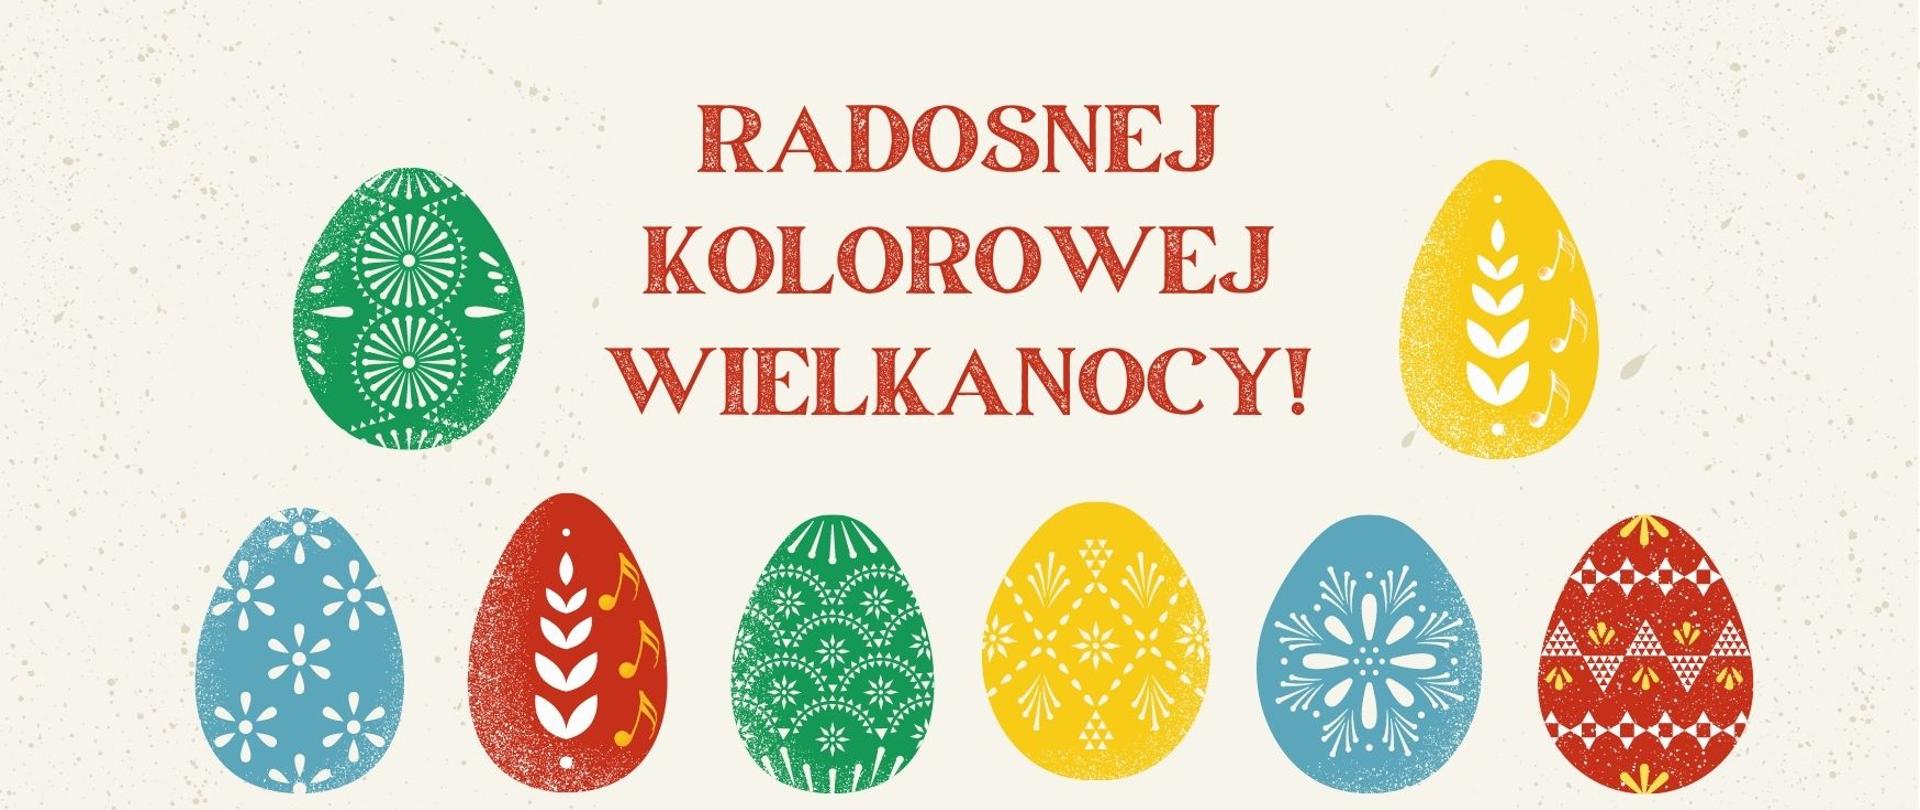 Grafika z napisem Radosnej, Kolorowej Wielkanocy i kilkunastoma kolorowymi pisankami ustawionymi w dwóch rzędach.